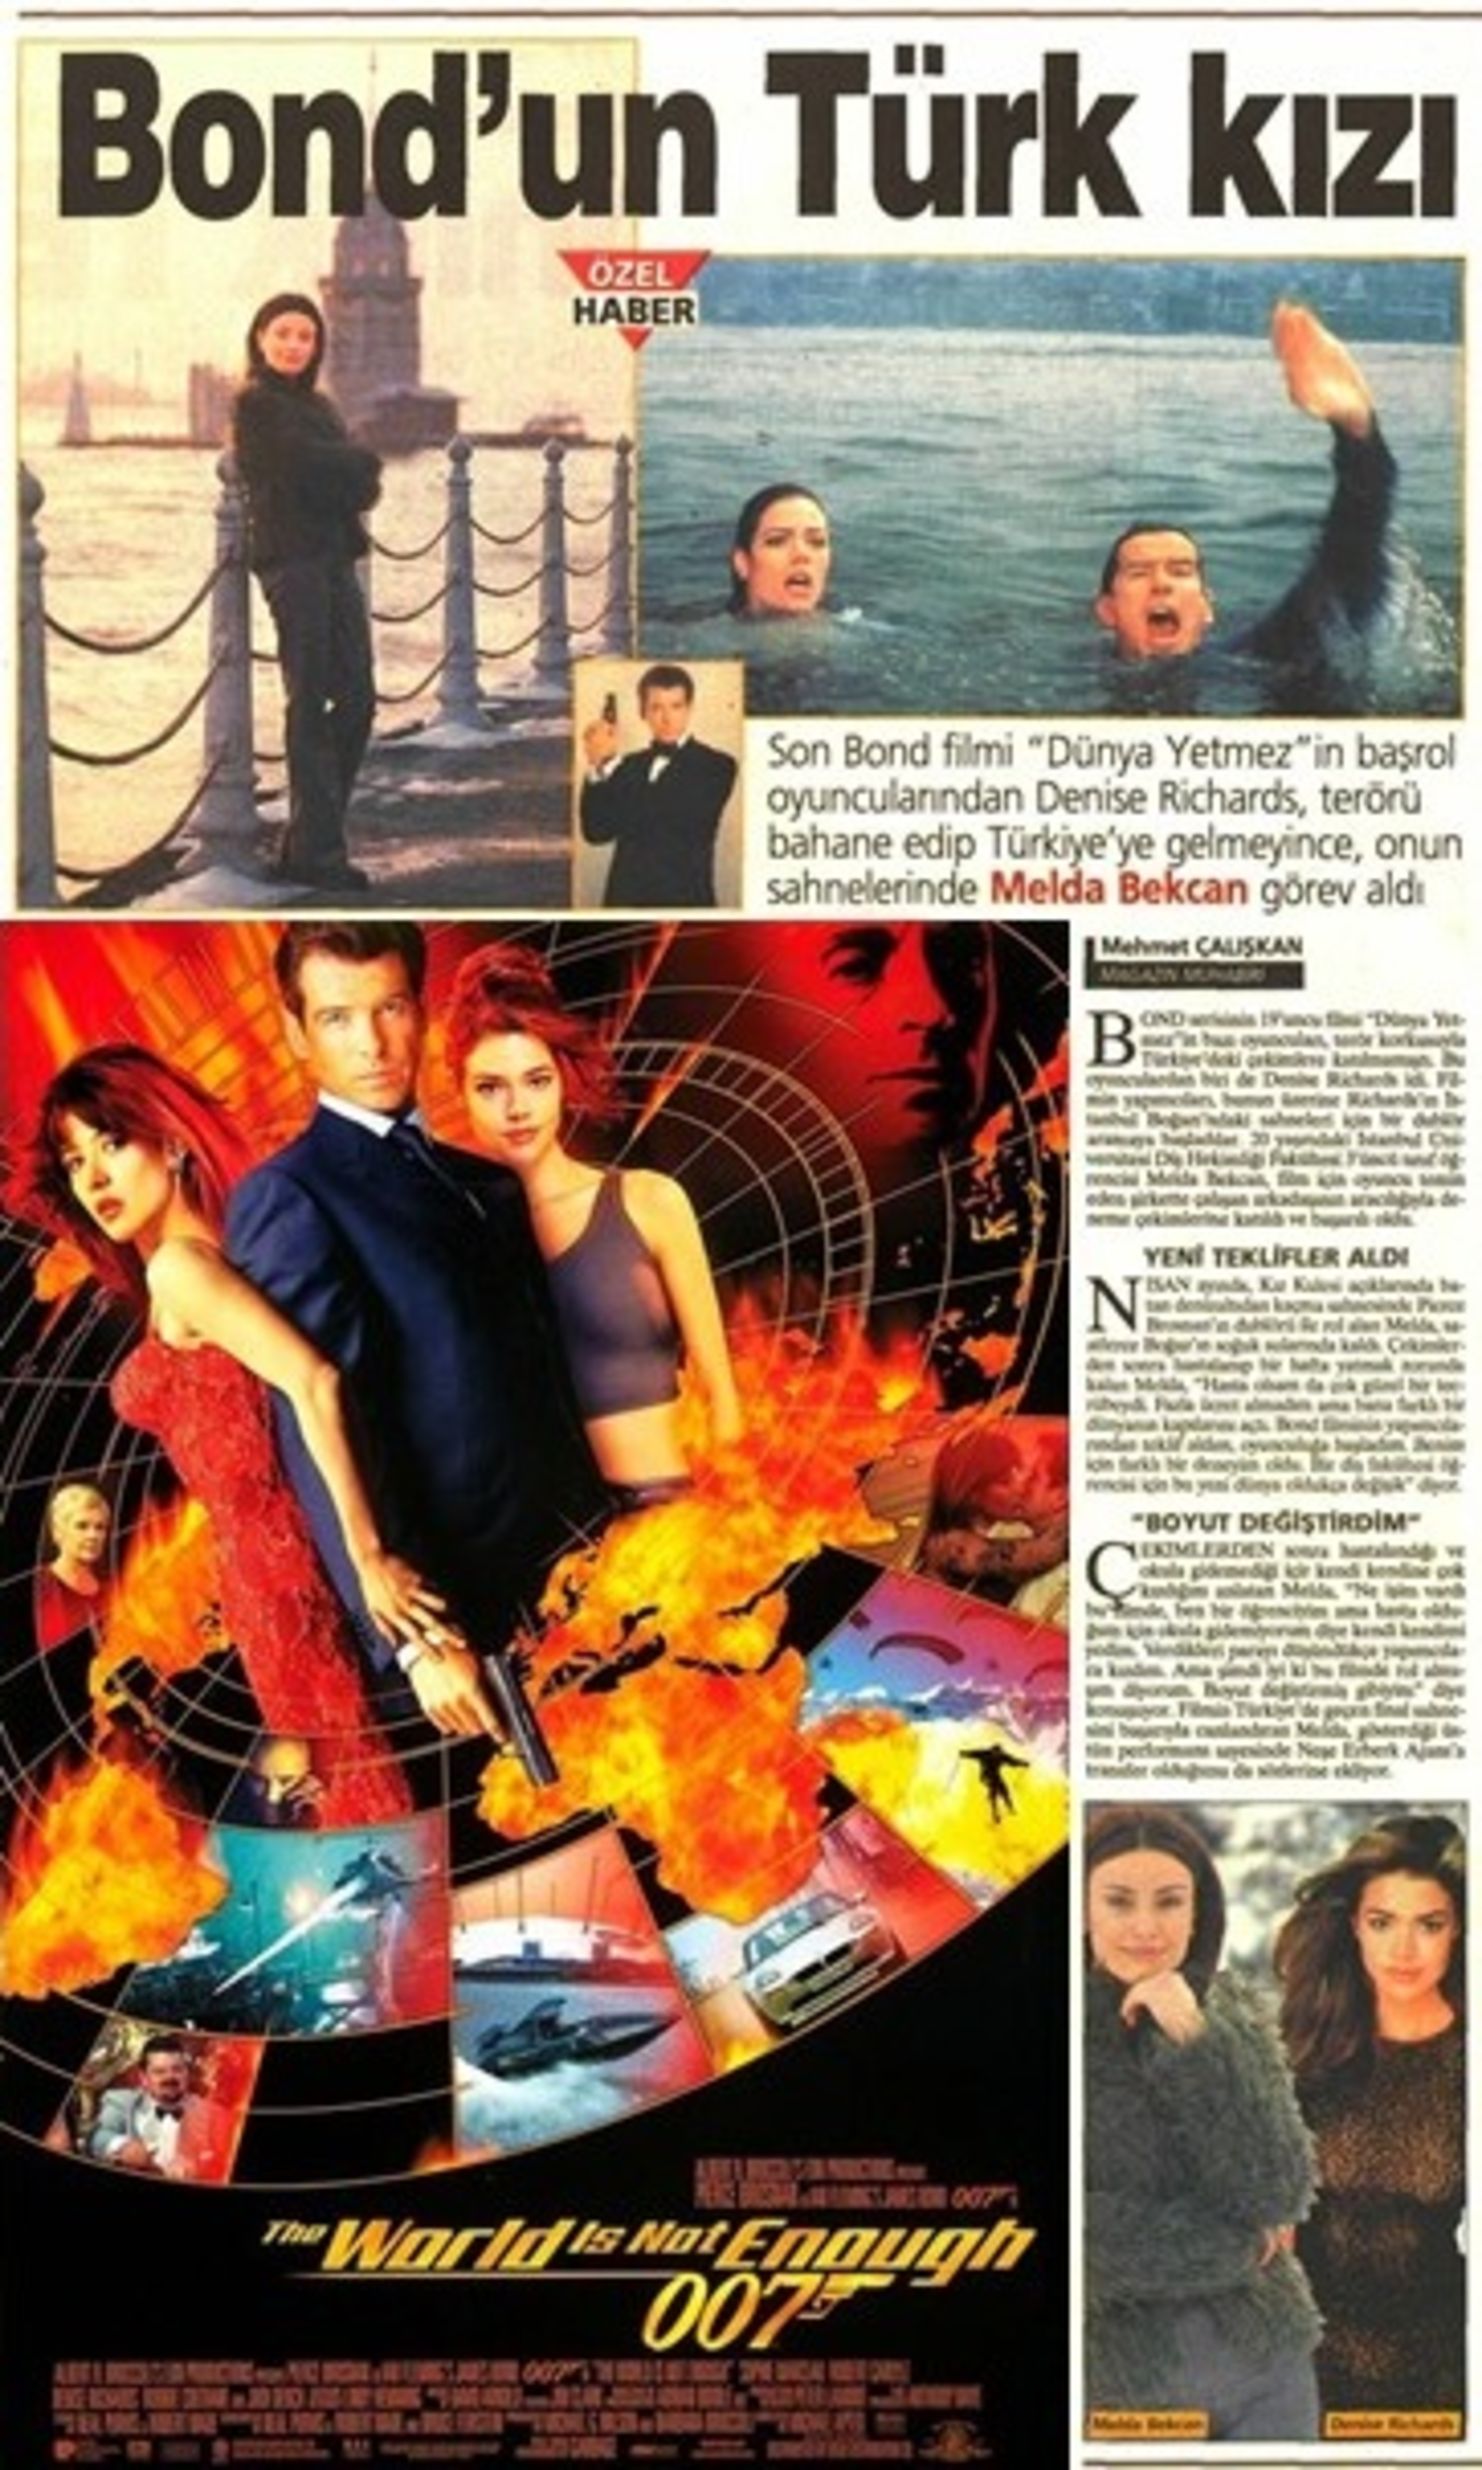 Filmde rol alan Türk oyunculardan Melda Bekcan, 1999'da yaptığım röportajda çekimlerle ilgili bilgiler vermişti.  